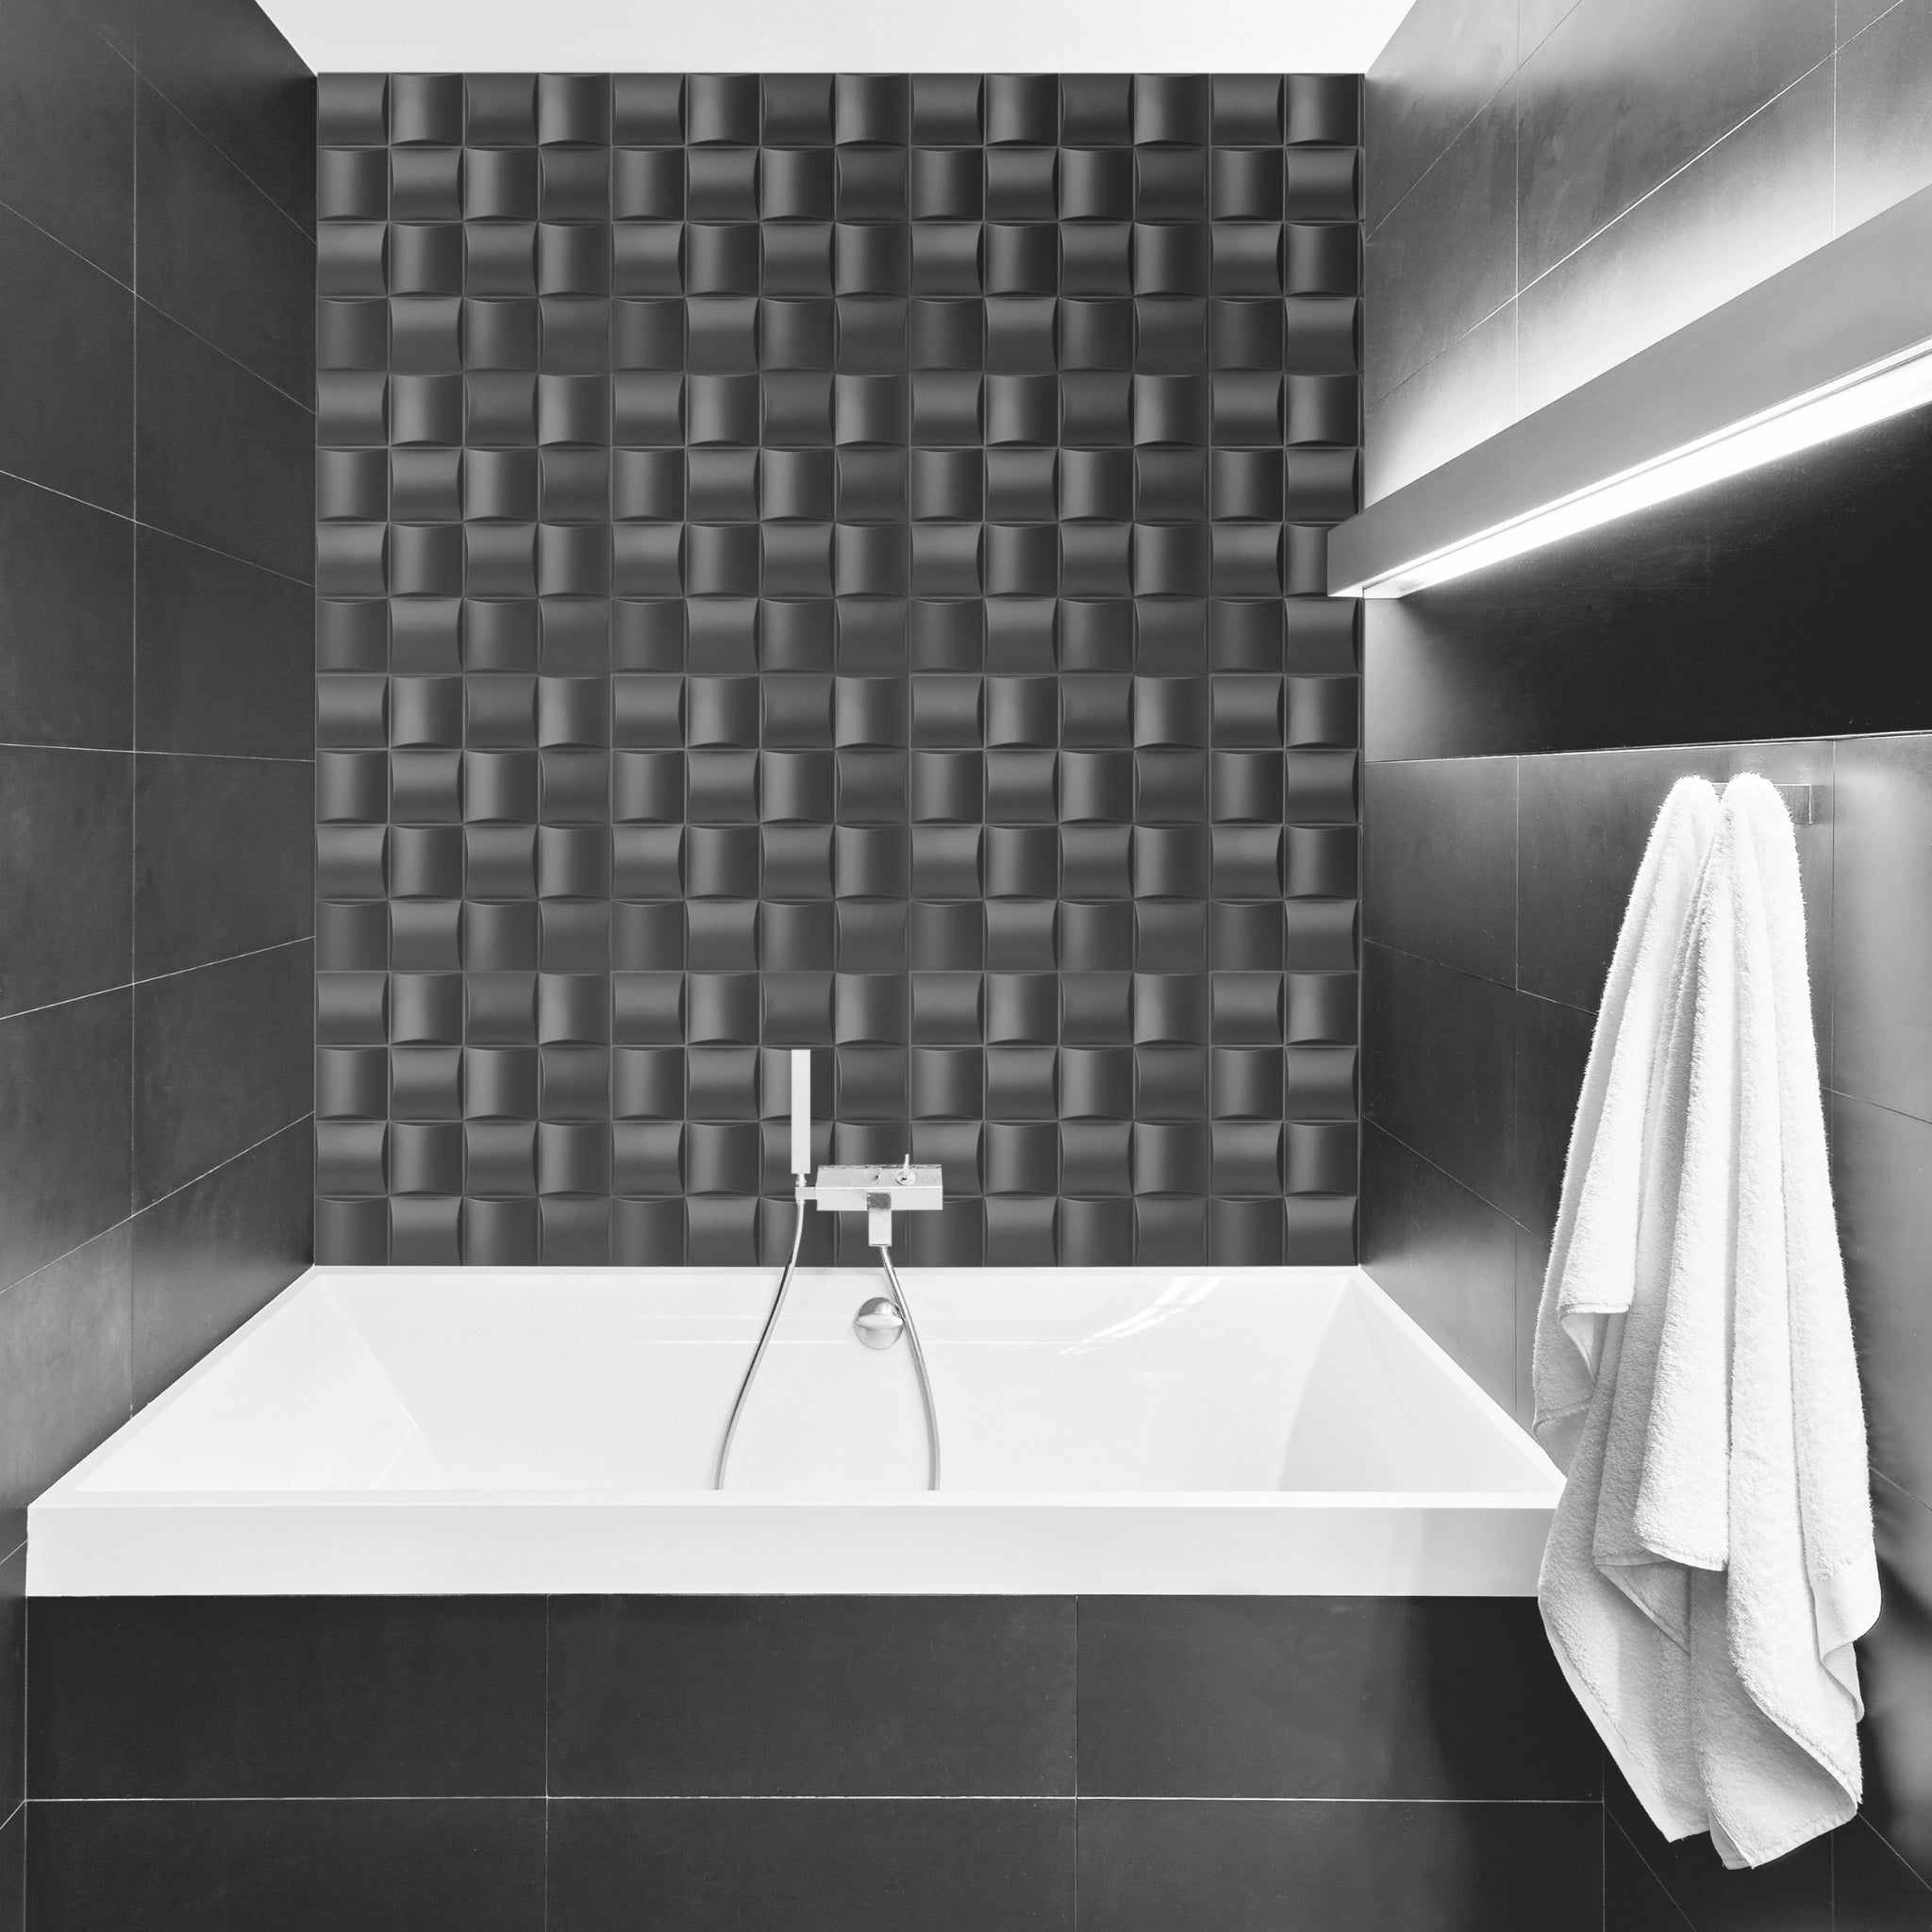 Grey 50x50 cm PVC wall panel in minimalist bathroom setting